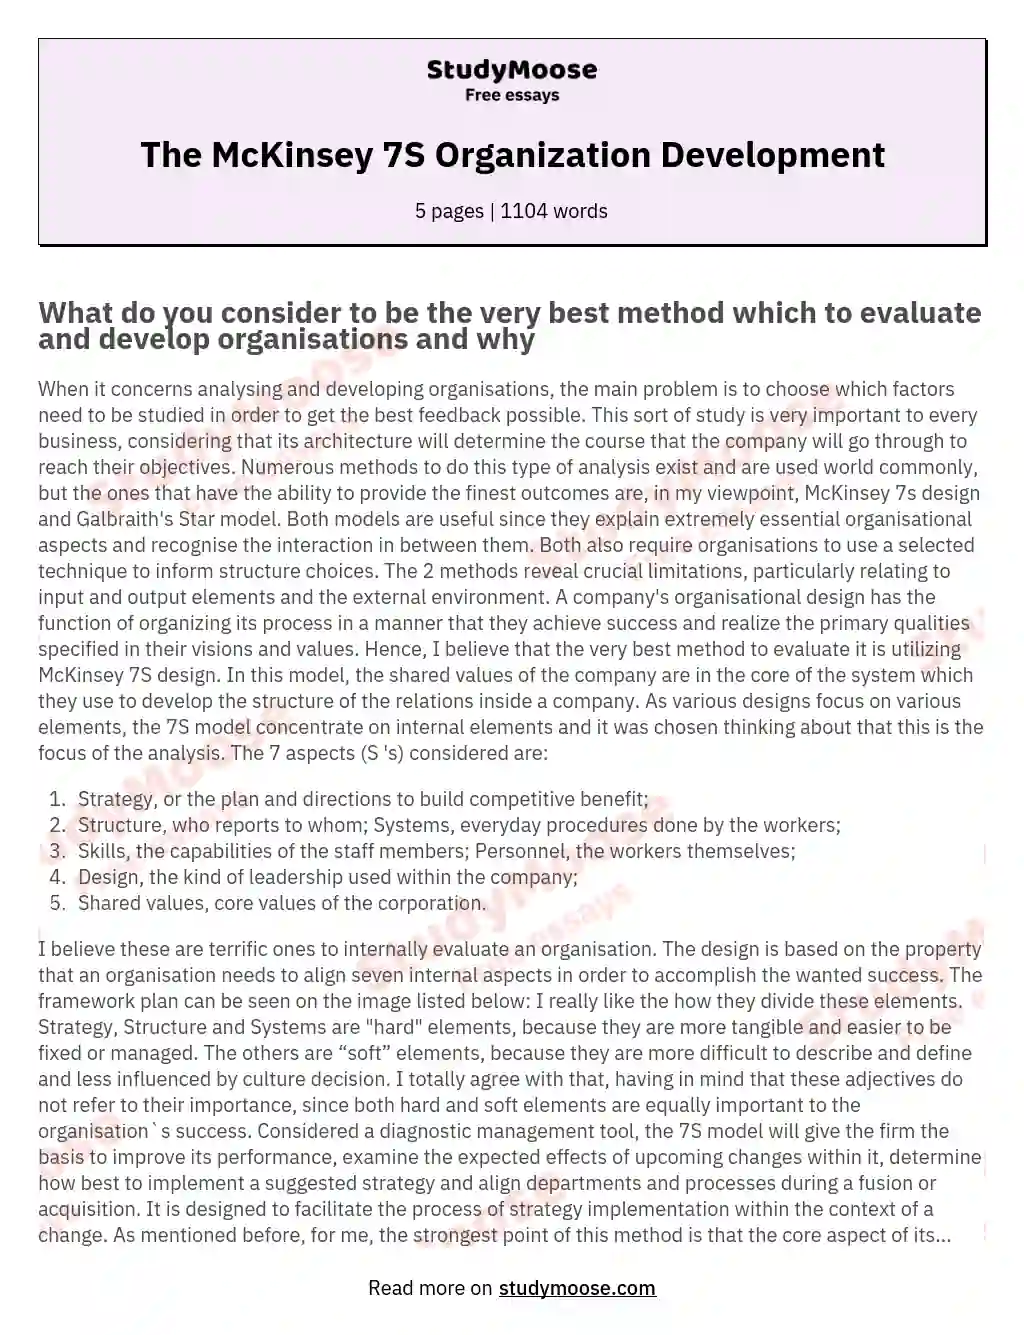 The McKinsey 7S Organization Development essay